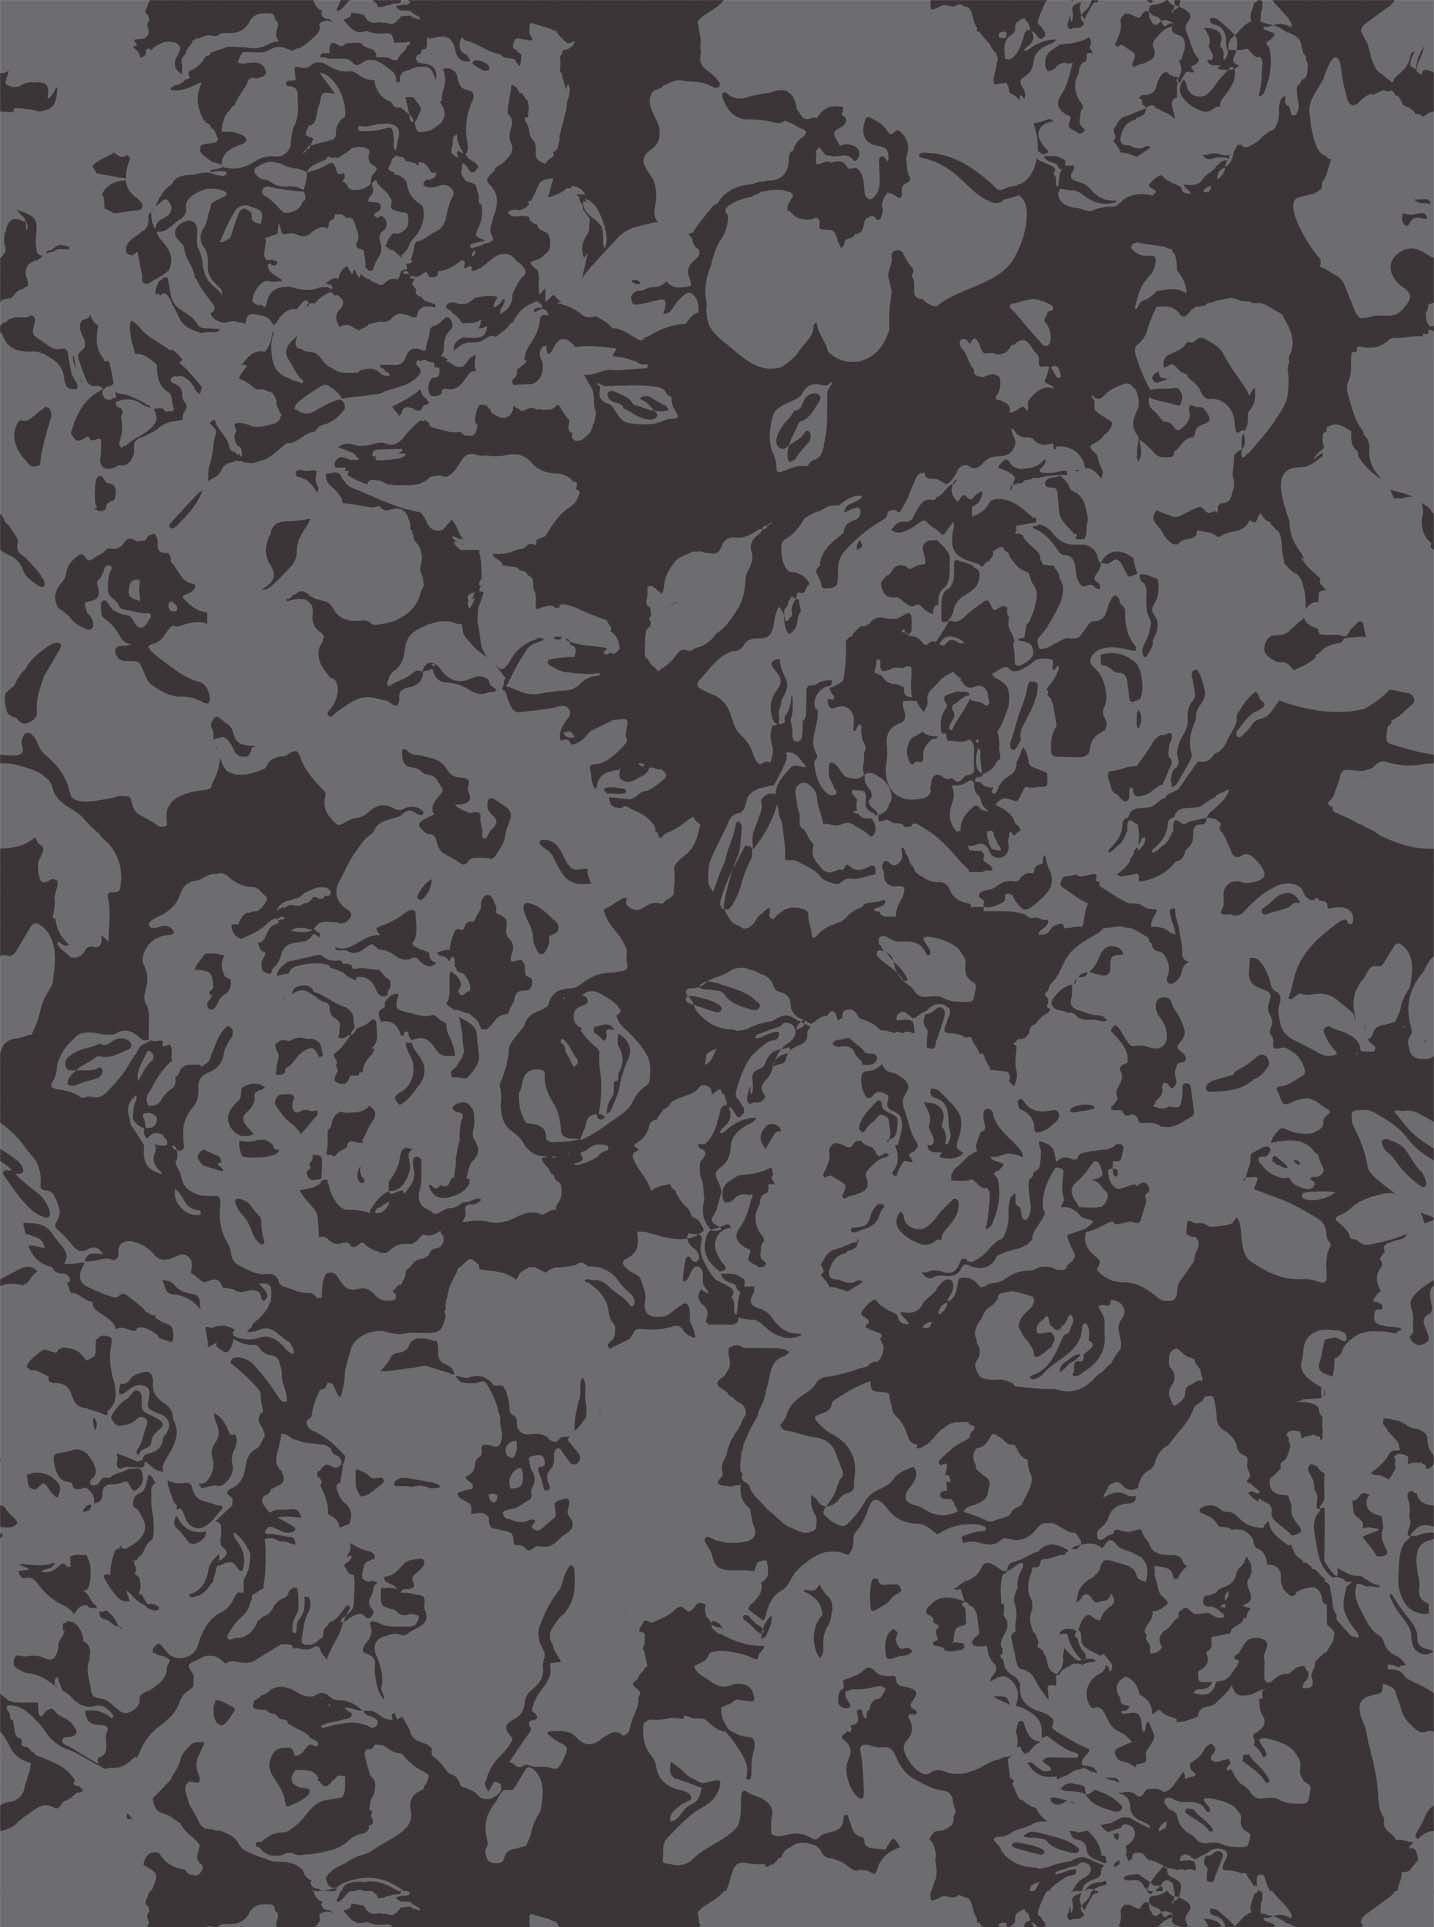 [44+] Grey Floral Wallpaper | WallpaperSafari.com